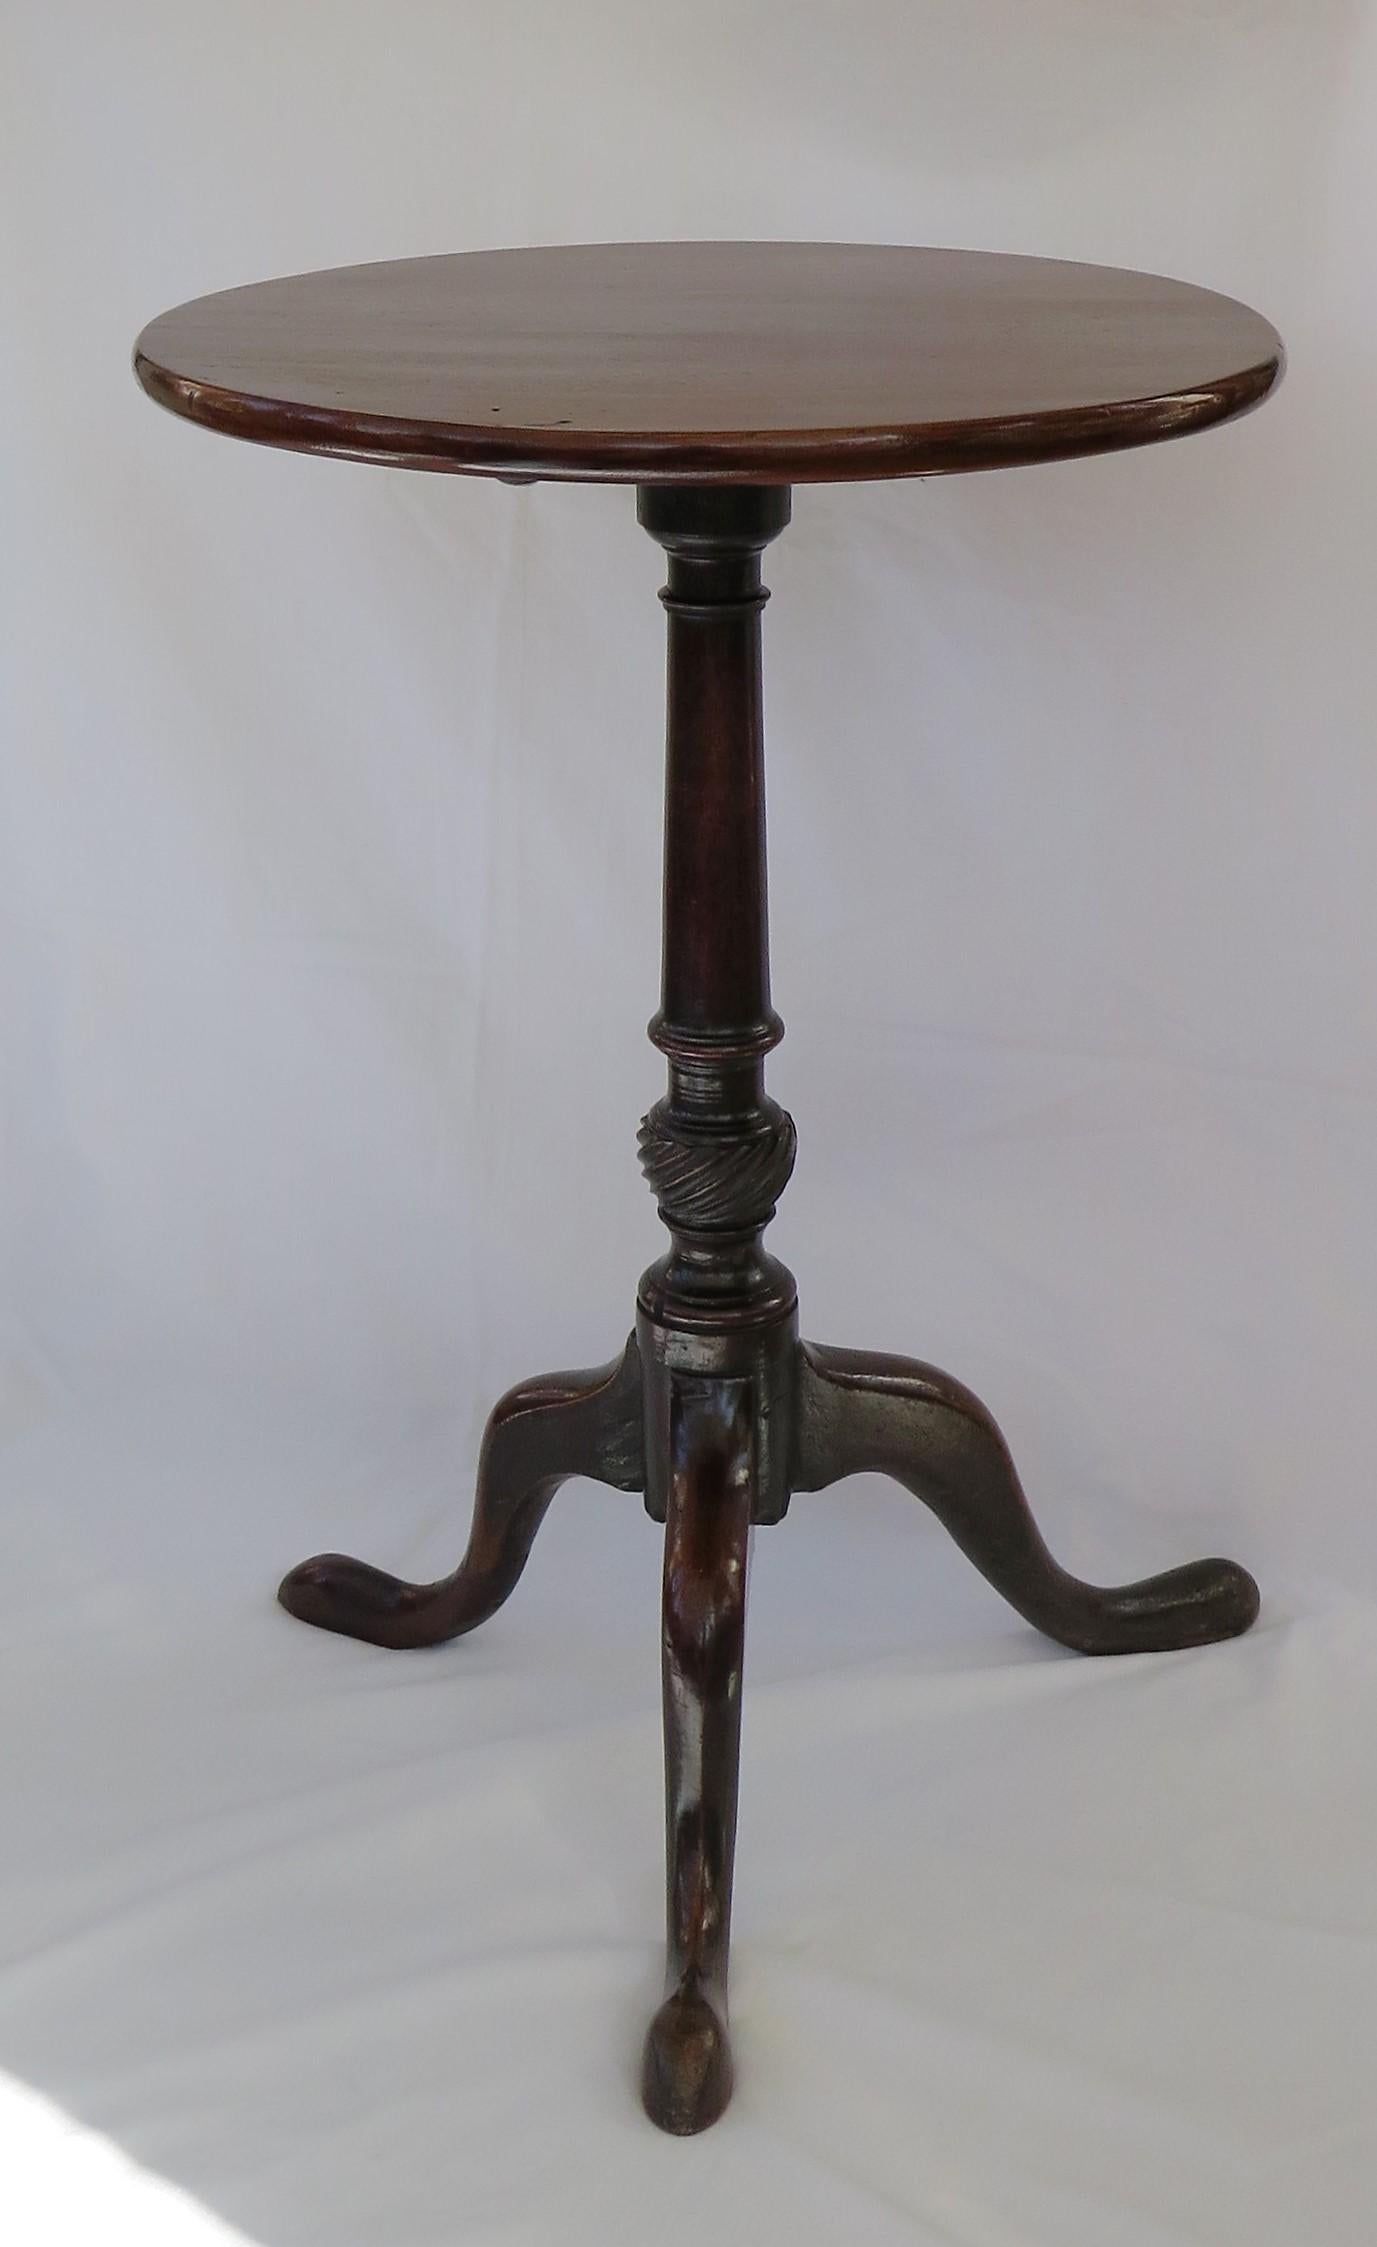 Il s'agit d'une élégante table tripode ou table à vin en bois dur massif, peut-être en noyer, aux proportions magnifiques, avec un plateau basculant, datant du milieu de la période géorgienne de Chippendale, vers 1760.

Le plateau circulaire est